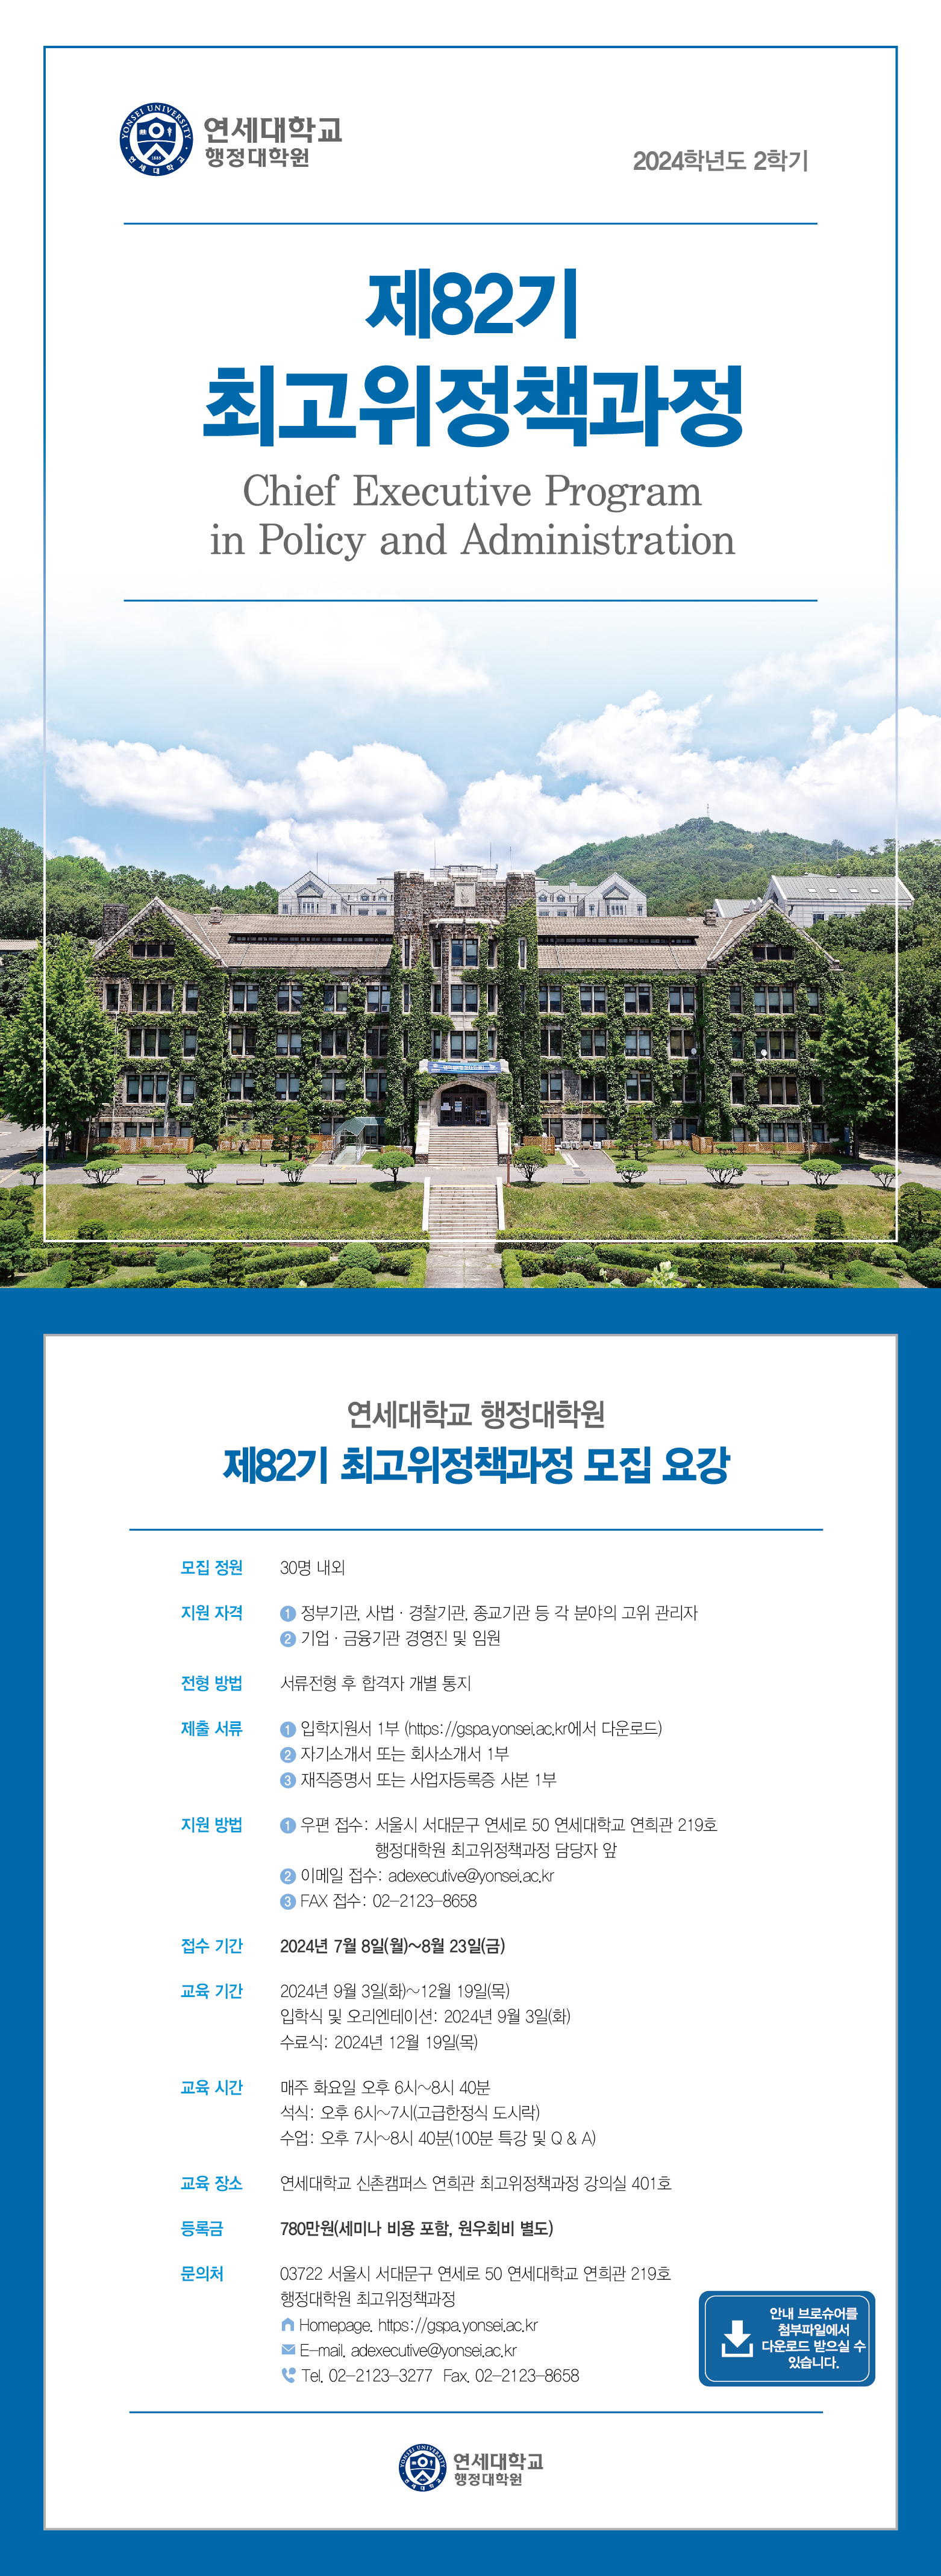 행정대학원 제82기 최고위정책과정 모집 안내 - 새창 이동